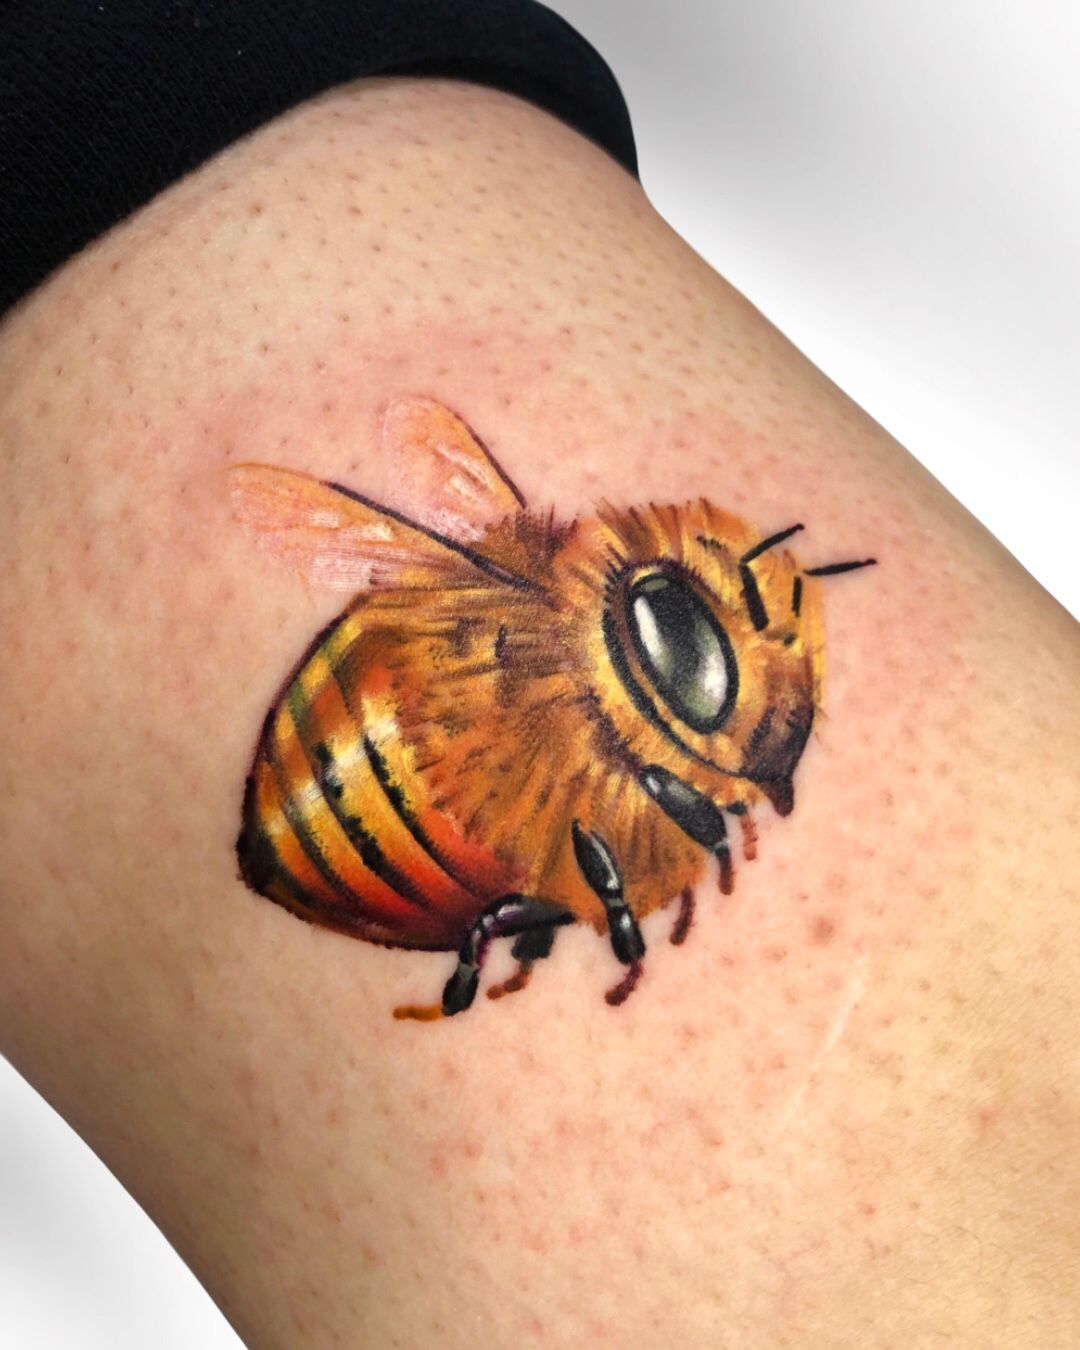 310 Cartoon Of A Bee Tattoo Illustrations RoyaltyFree Vector Graphics   Clip Art  iStock